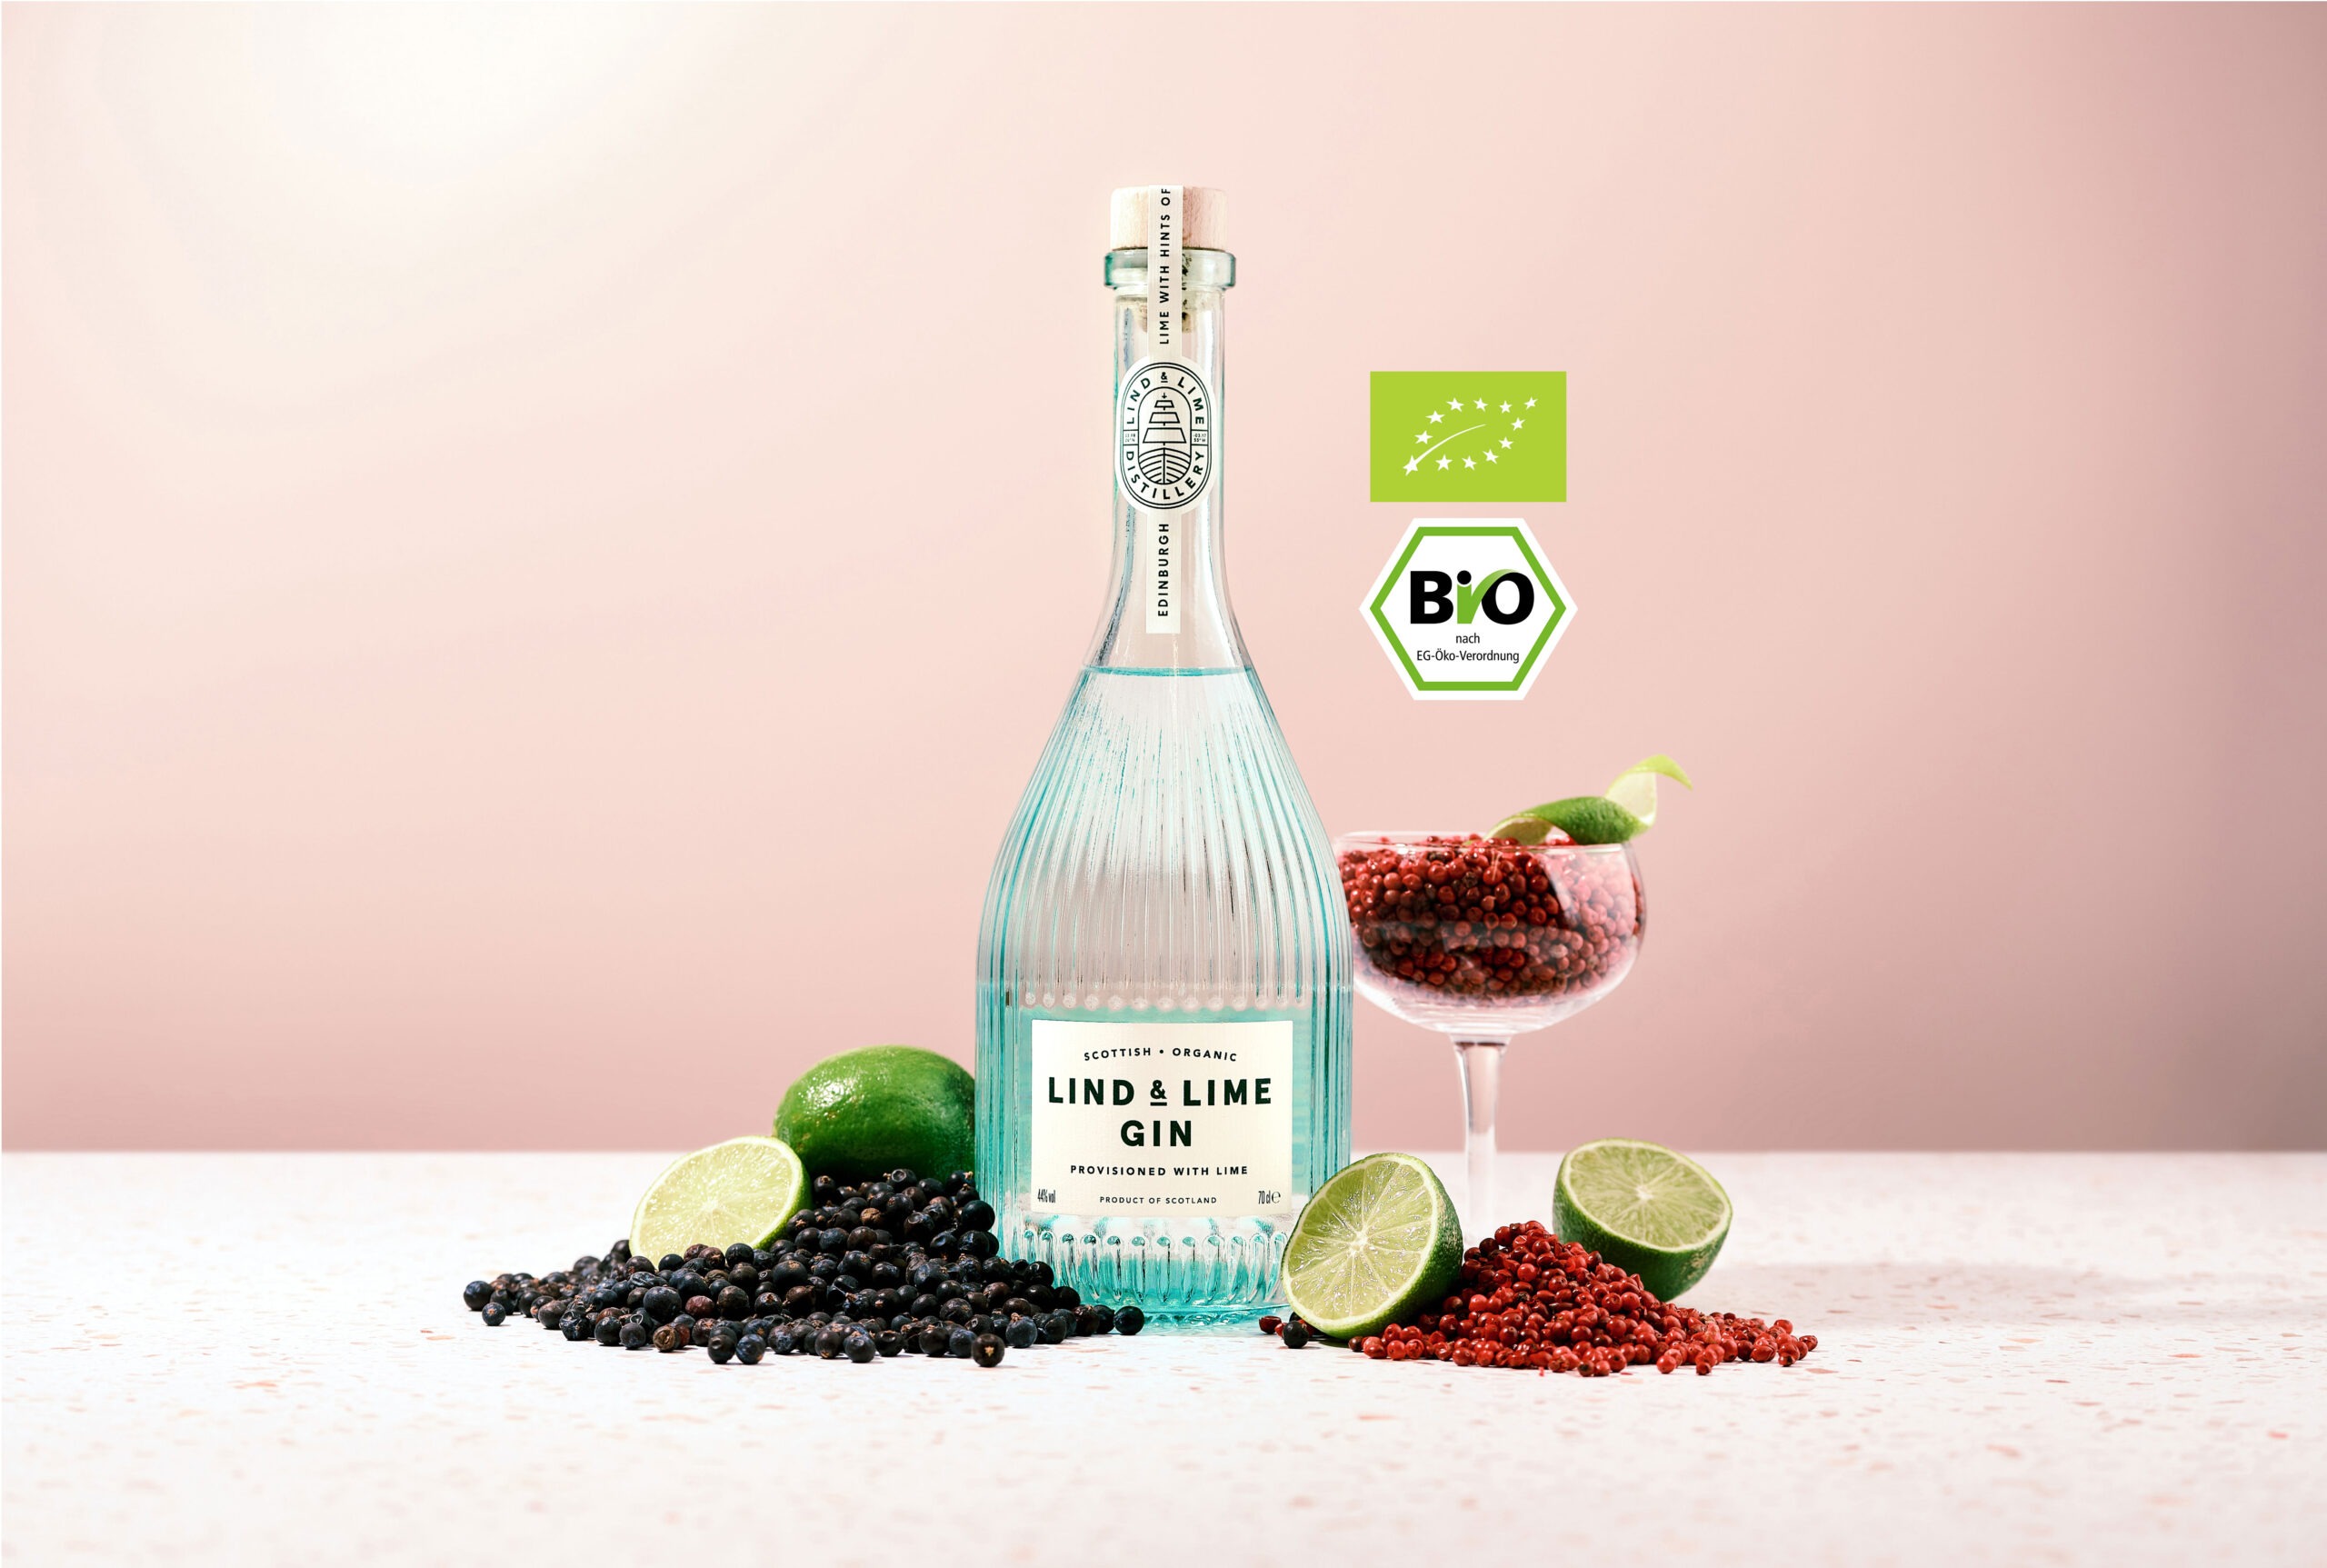 Lind & Lime ist ein prämierter & nachhaltig produzierter Gin aus Edinburgh